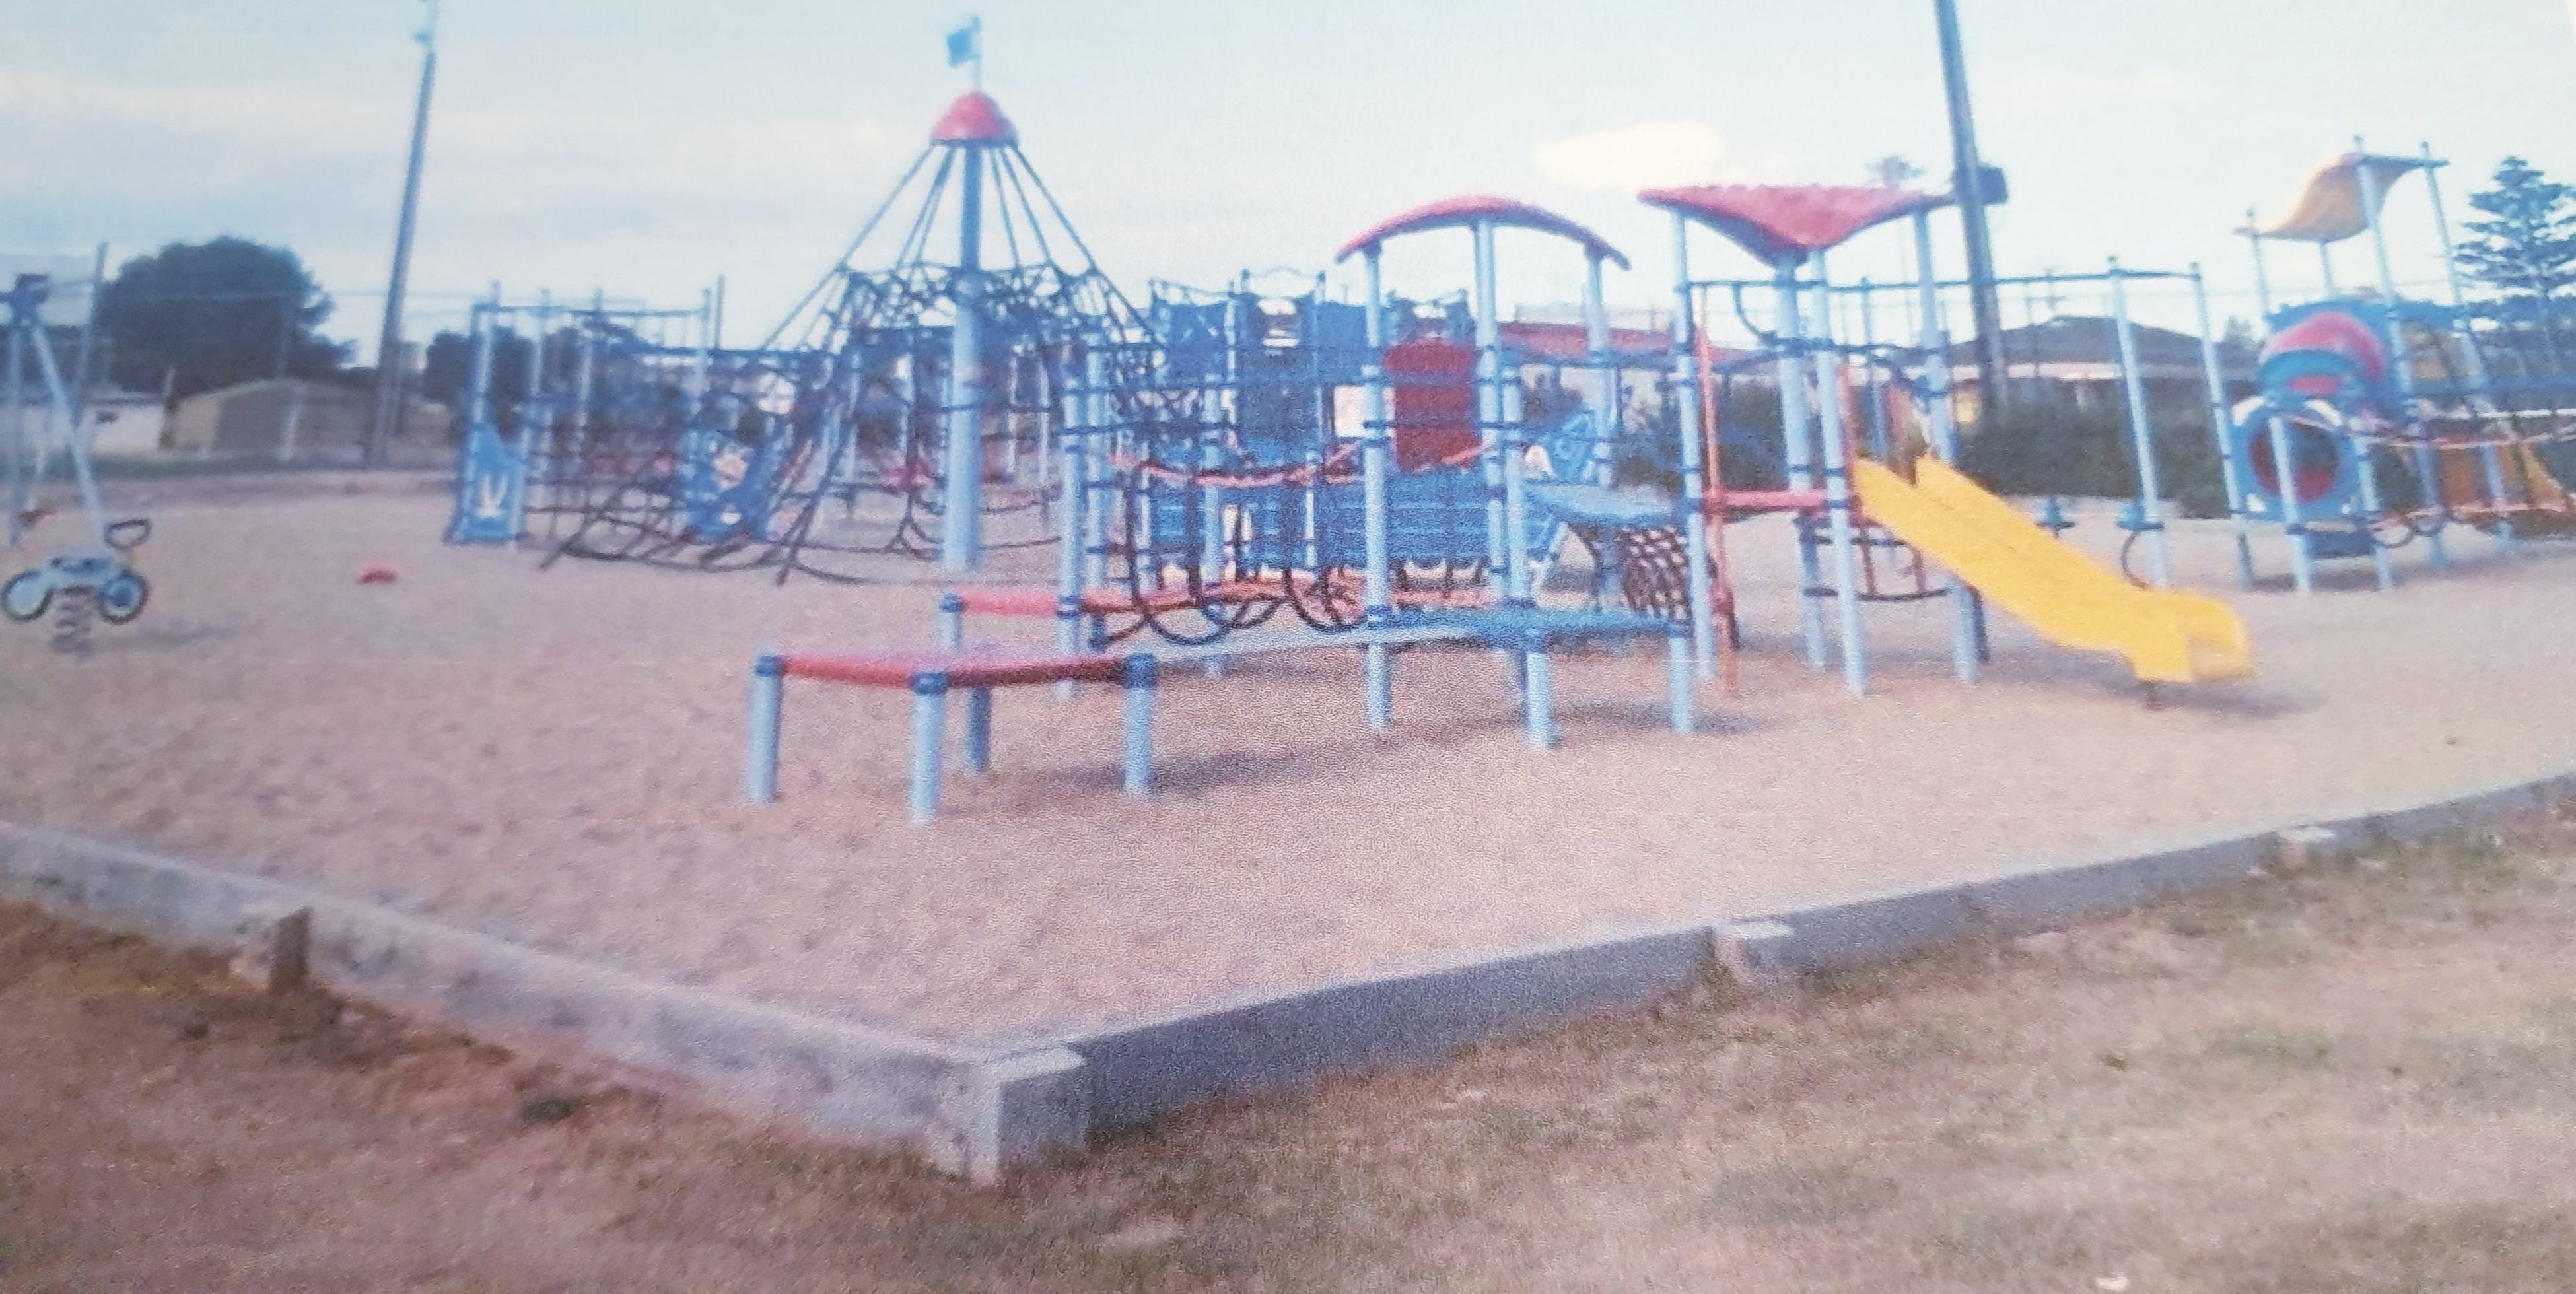 Edithburgh Playground - Accommodation Yamba